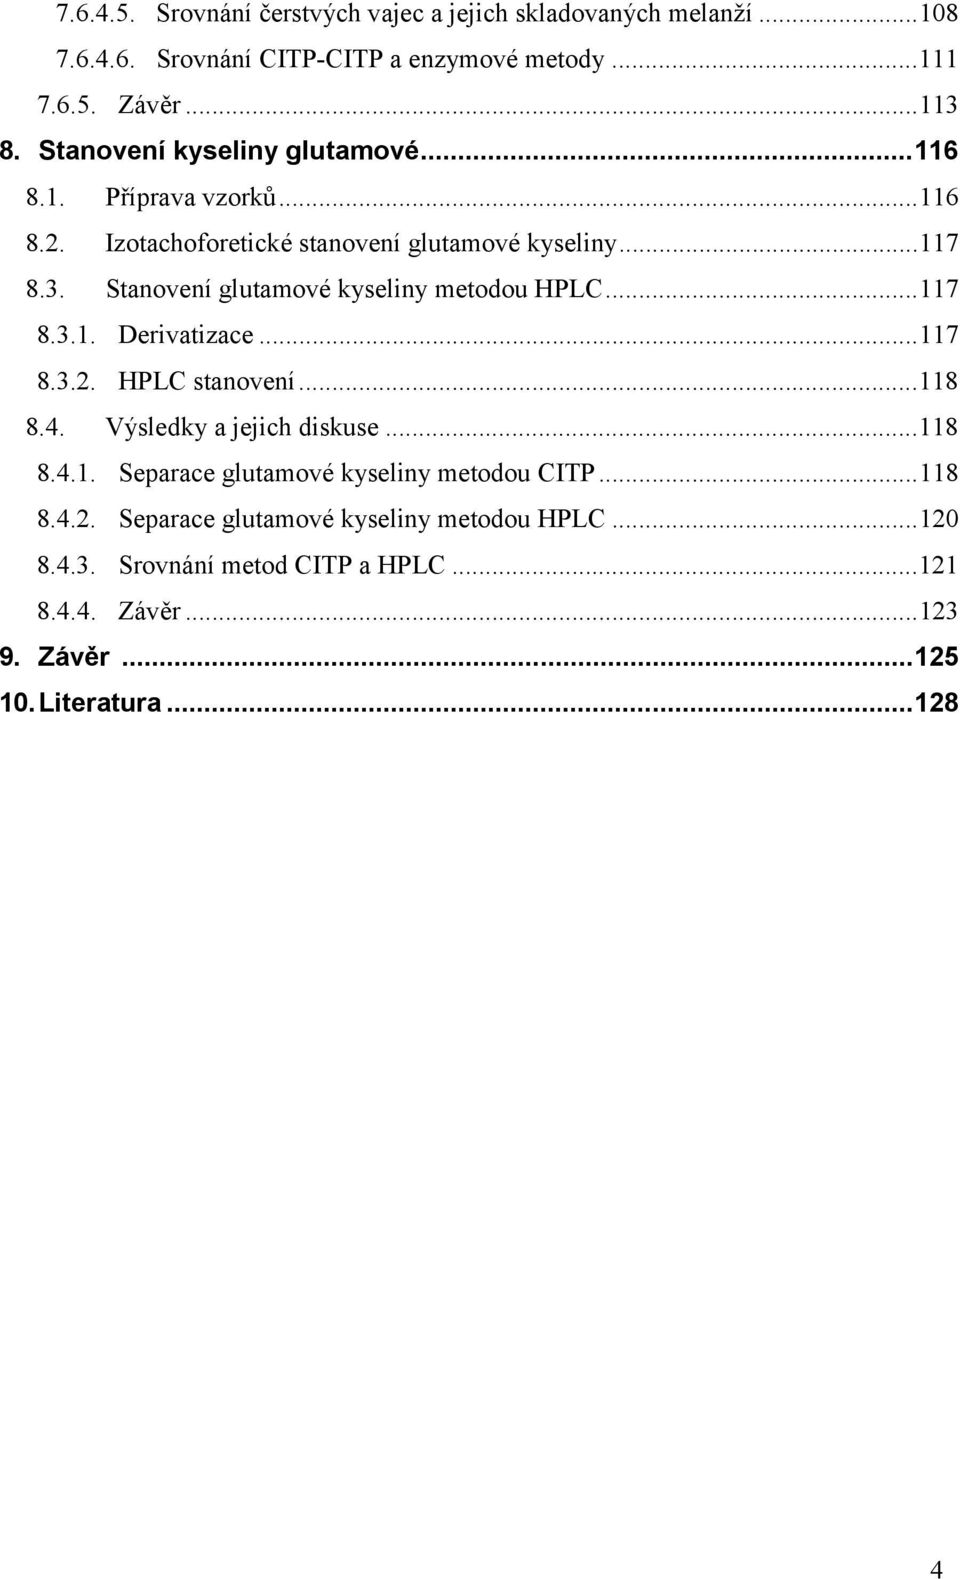 Stanovení glutamové kyseliny metodou HPLC...117 8.3.1. Derivatizace...117 8.3.2. HPLC stanovení...118 8.4. Výsledky a jejich diskuse...118 8.4.1. Separace glutamové kyseliny metodou CITP.